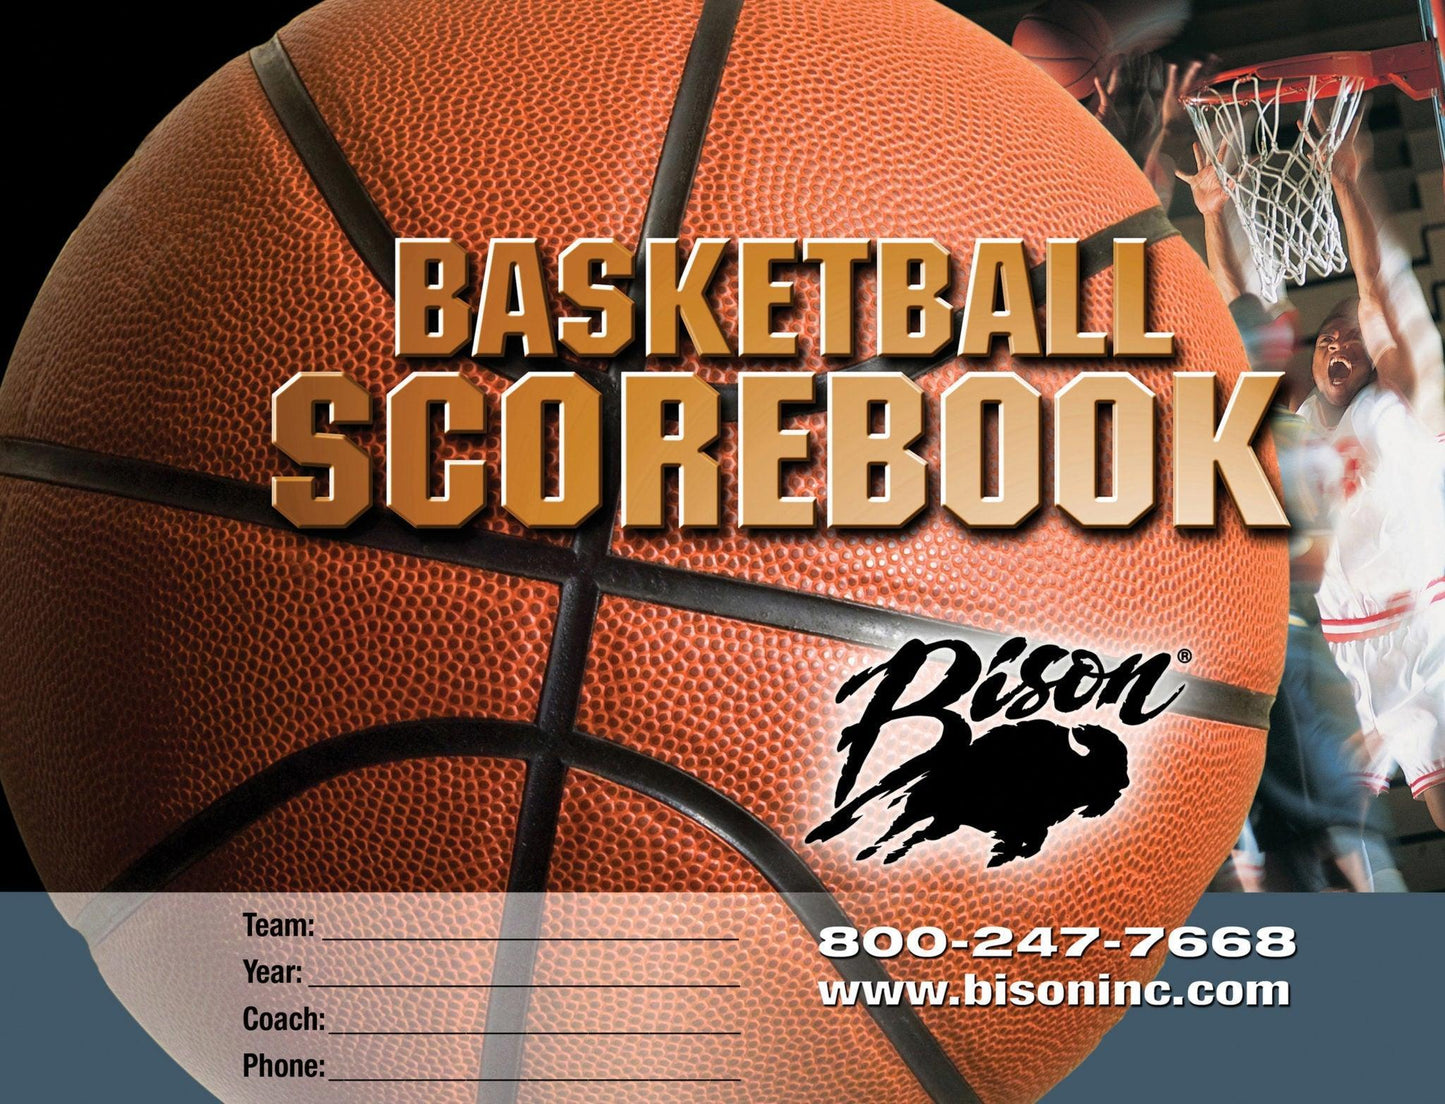 Bison Basketball Team Scorebook - bisoninc